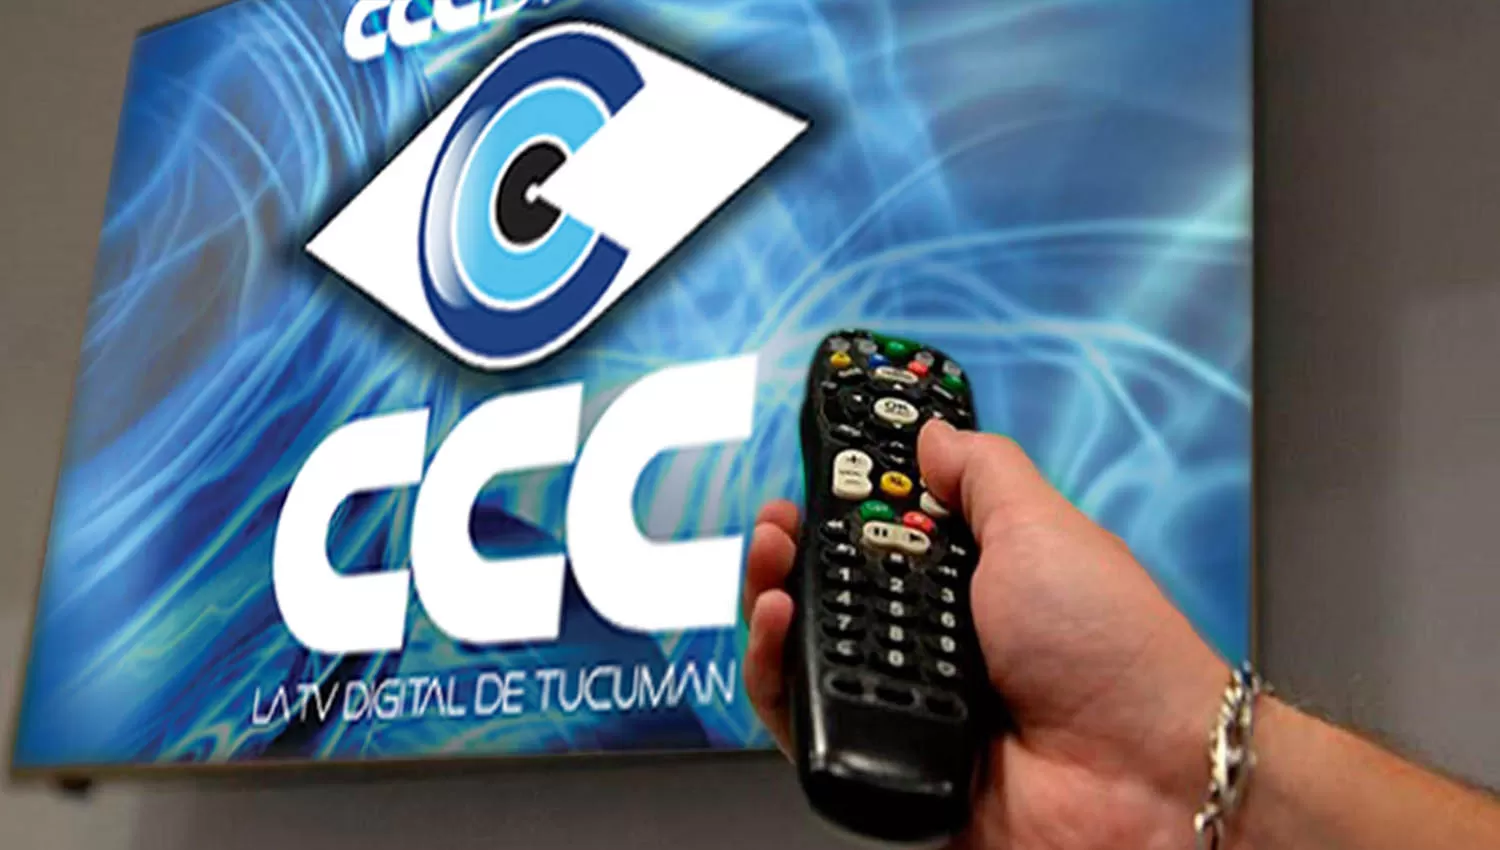 Ladrones robaron equipos de CCC y dejaron sin televisión a los usuarios del centro